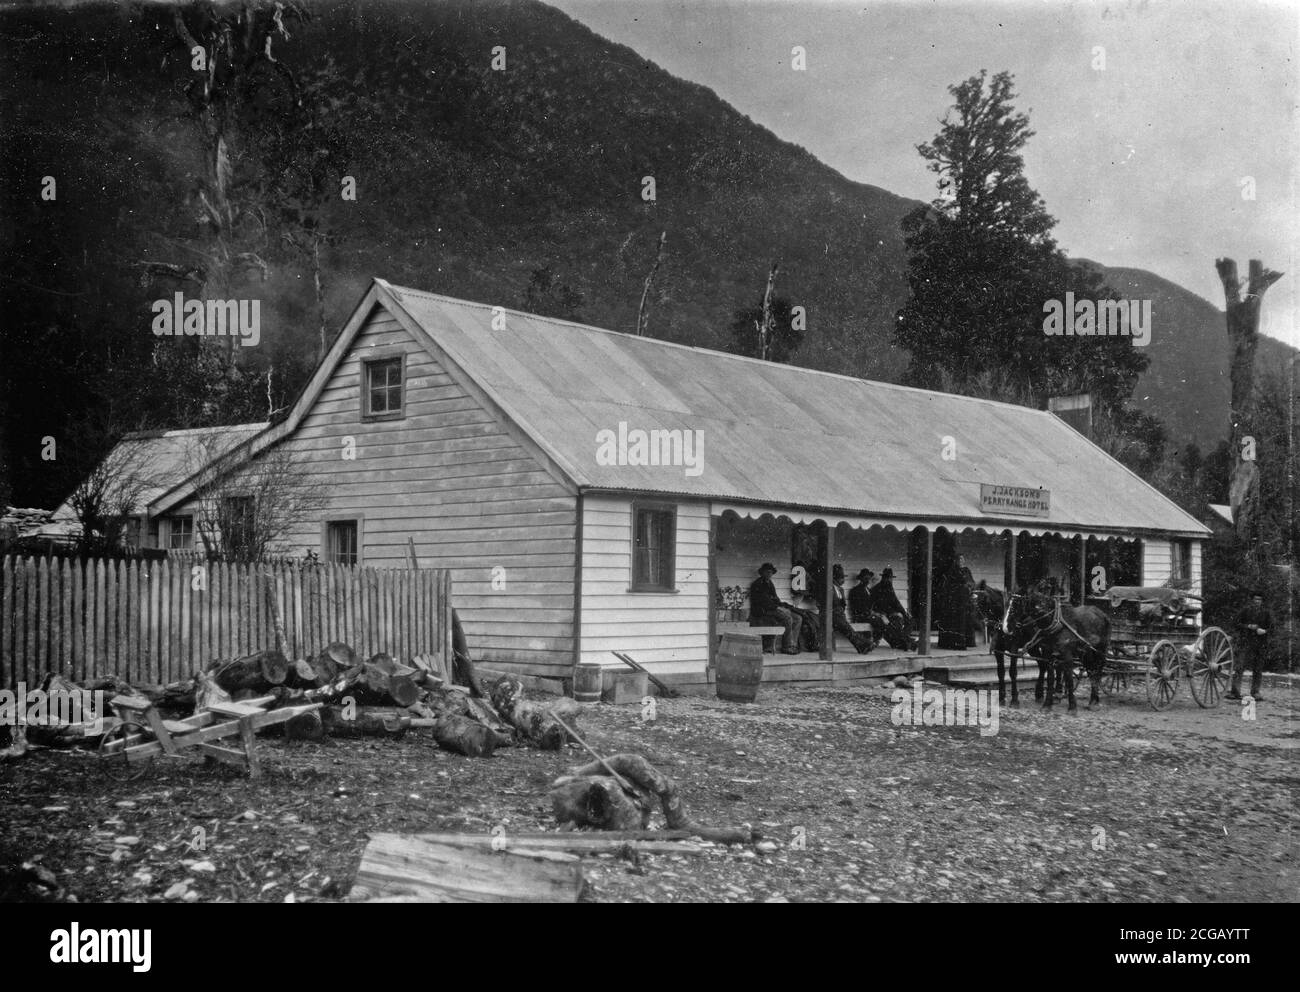 Un wagon attend devant l'hôtel J. Jackson Perry Range sur le Taramakau près d'Otira, vers 1916. Image vers 1916, de la collection de la famille Logie. Banque D'Images